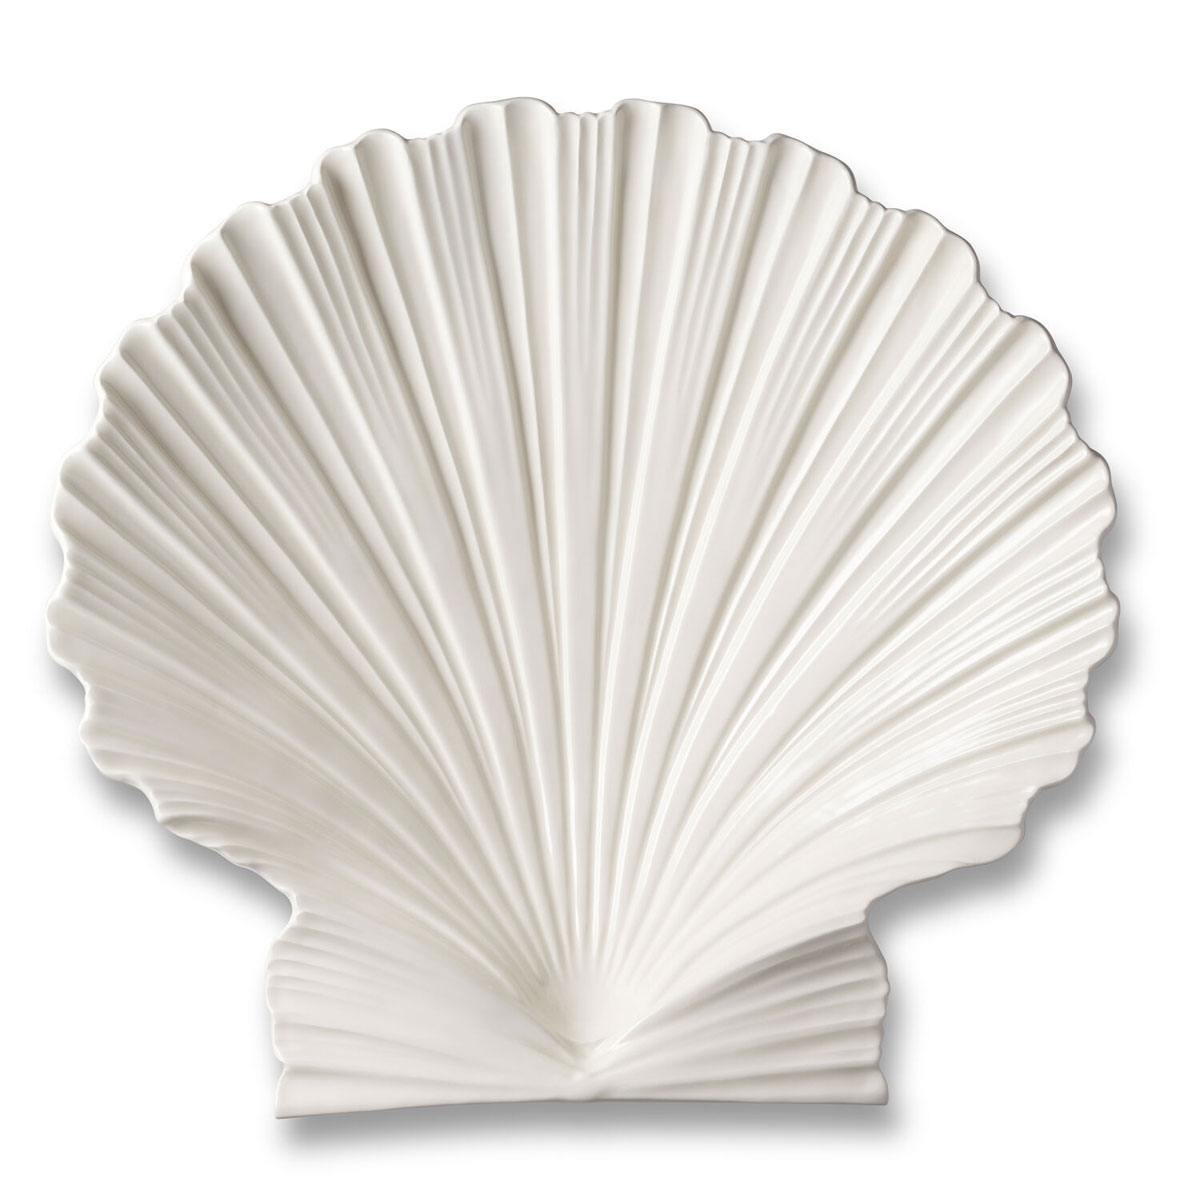 Aerin Shell Serving 10" Platter, Cream